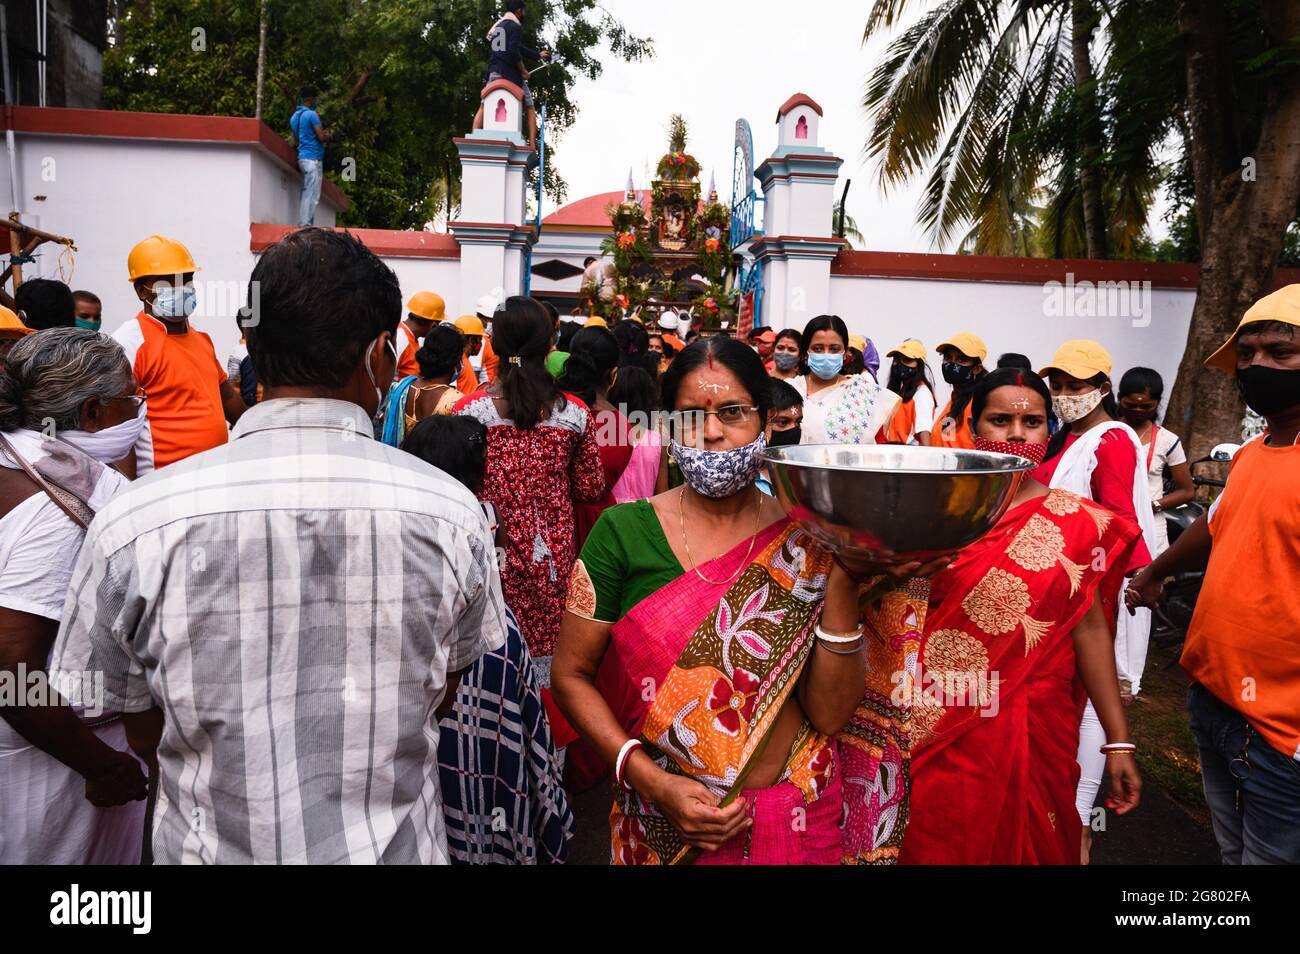 La festa di Ratha Yatra è stata celebrata all'interno del tempio di Tehatta, in conformità con le norme amministrative per le precauzioni contro il coronavirus. Non è stato permesso loro di entrare senza maschere. Un'organizzazione volontaria ha aiutato con l'igienizzatore per i devoti. Anche se ci erano regole, alcuni bambini ed anziani non hanno indossato le maschere o non stavano indossando le maschere correttamente. Tehatta, Bengala Occidentale; India. Foto Stock